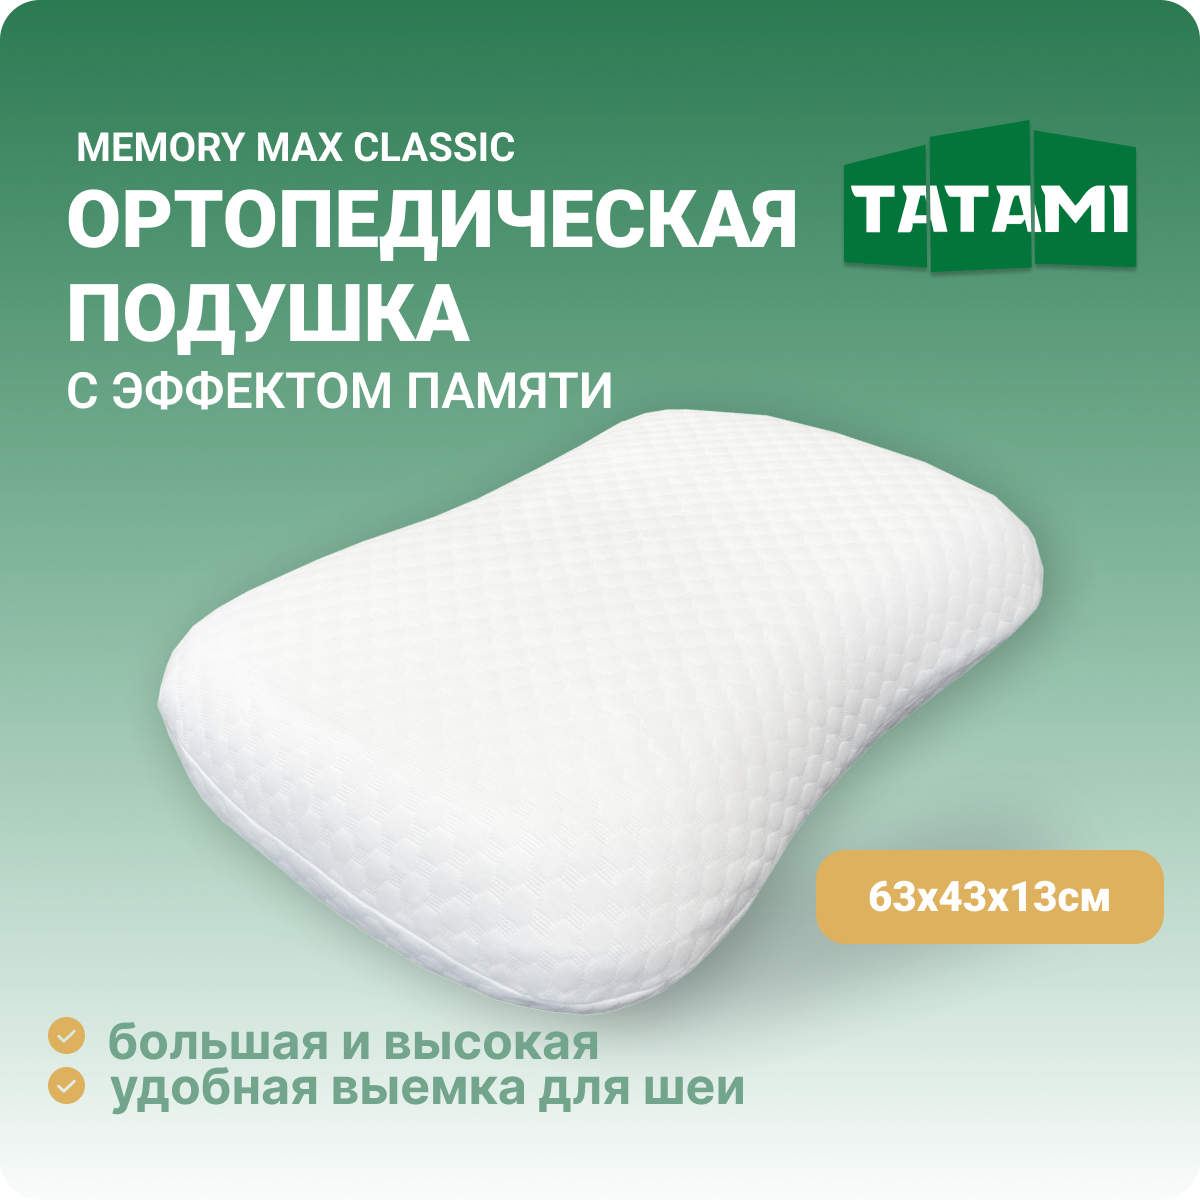 Ортопедическая подушка с эффектом памяти Tatami Memory Max Classic 43x63 см, высота 13 см